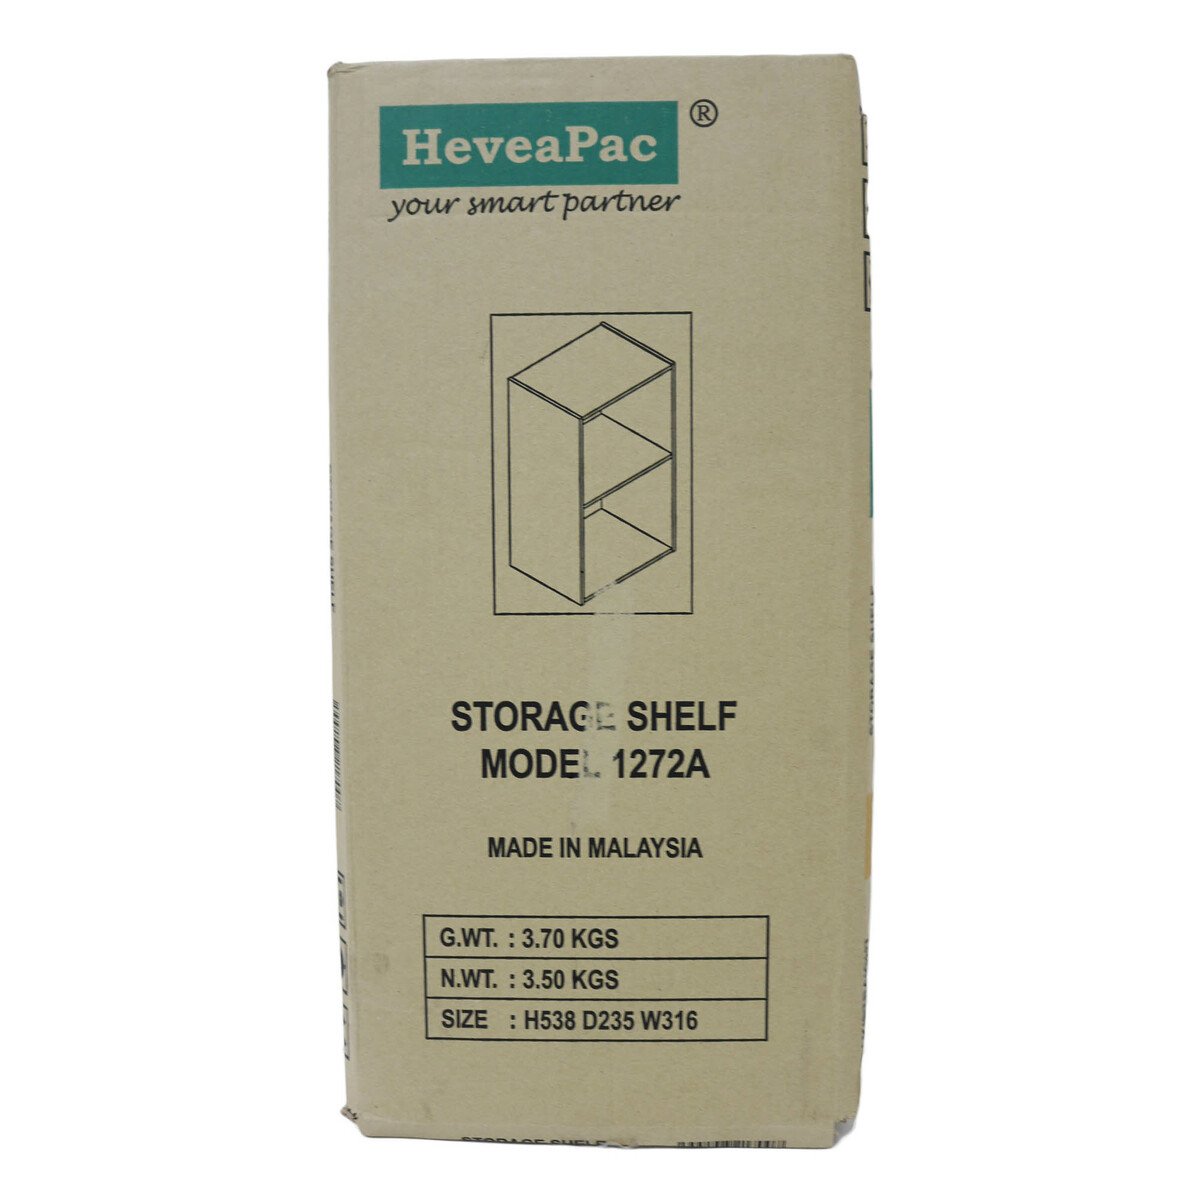 Heveapac 2Tier Storage Shelf 1272